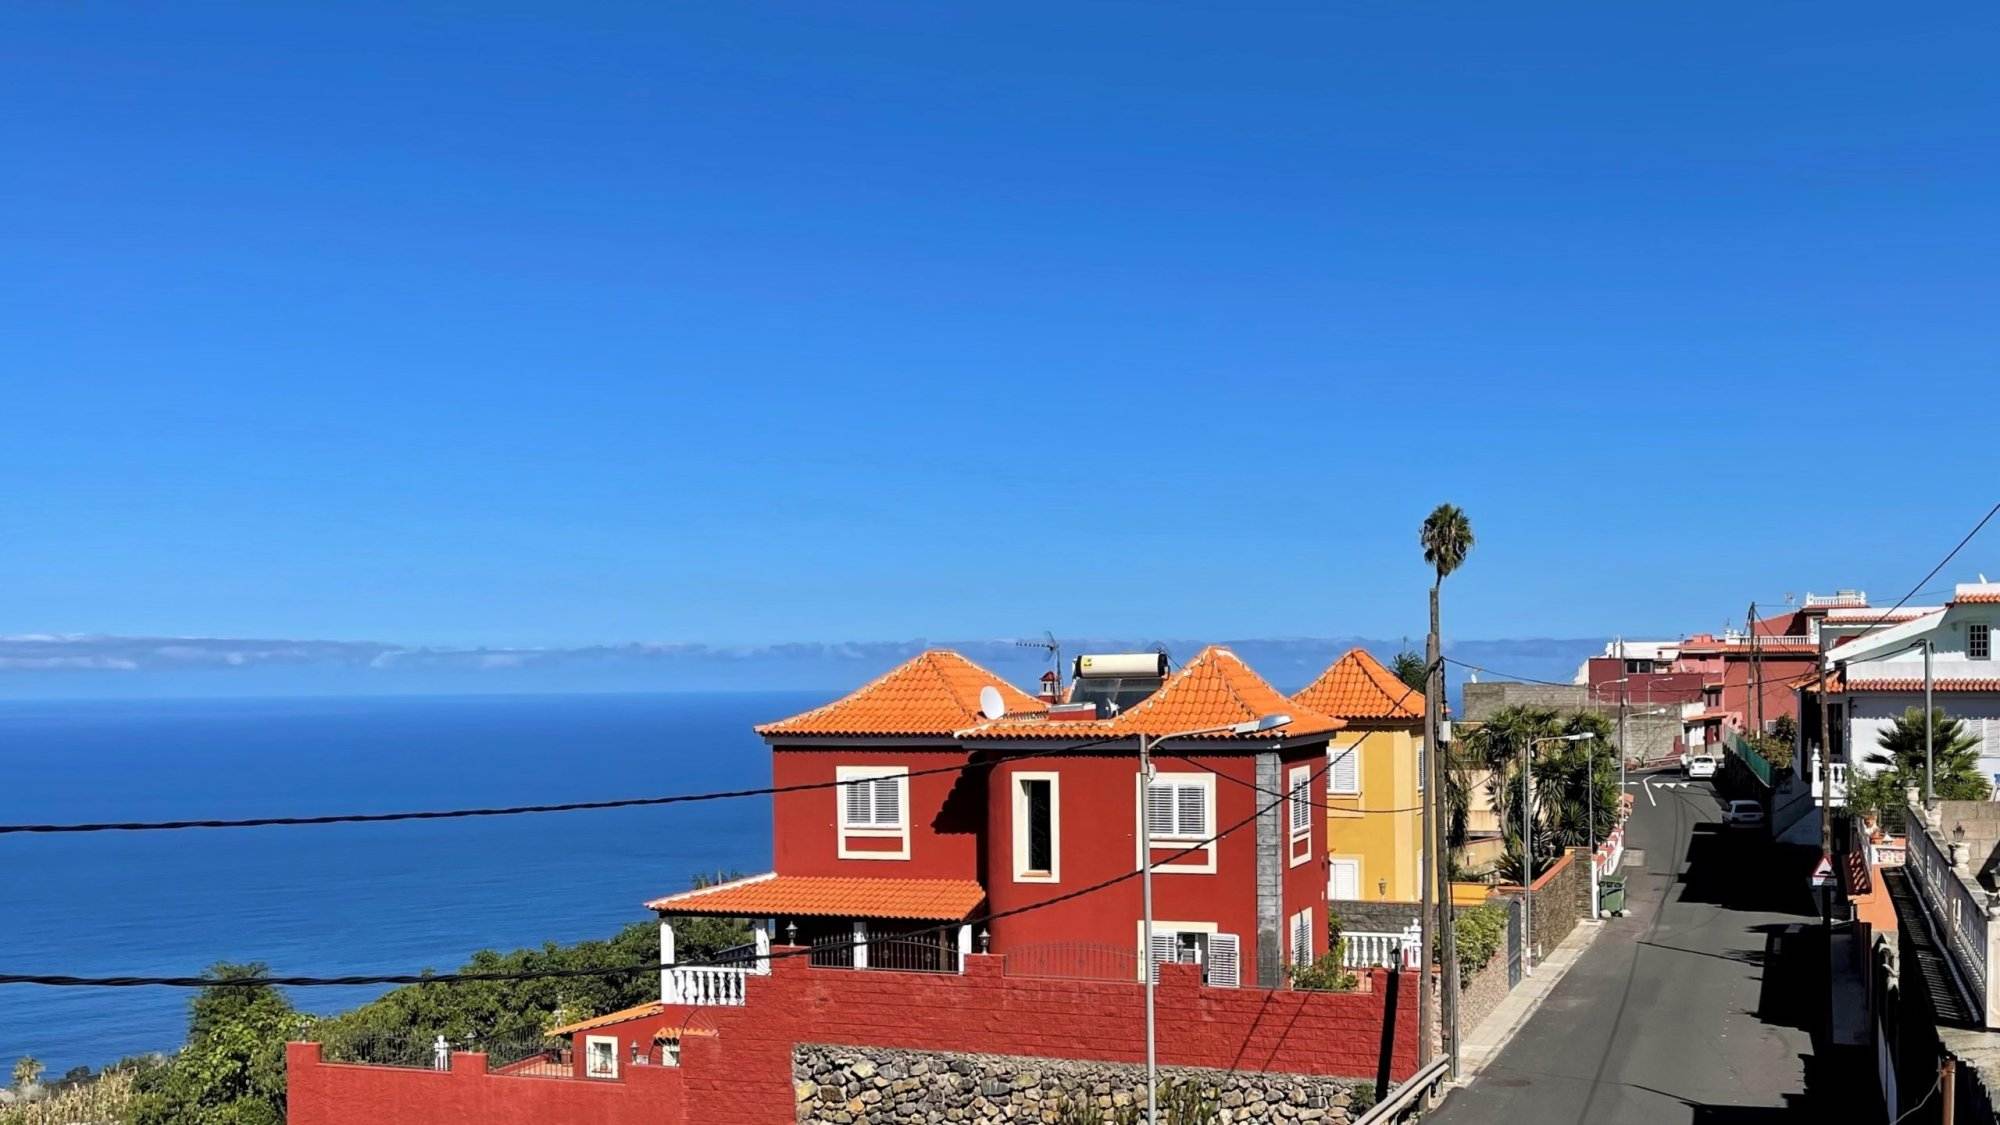 Eine Straße mit roten Häusern und Blick auf das Meer.